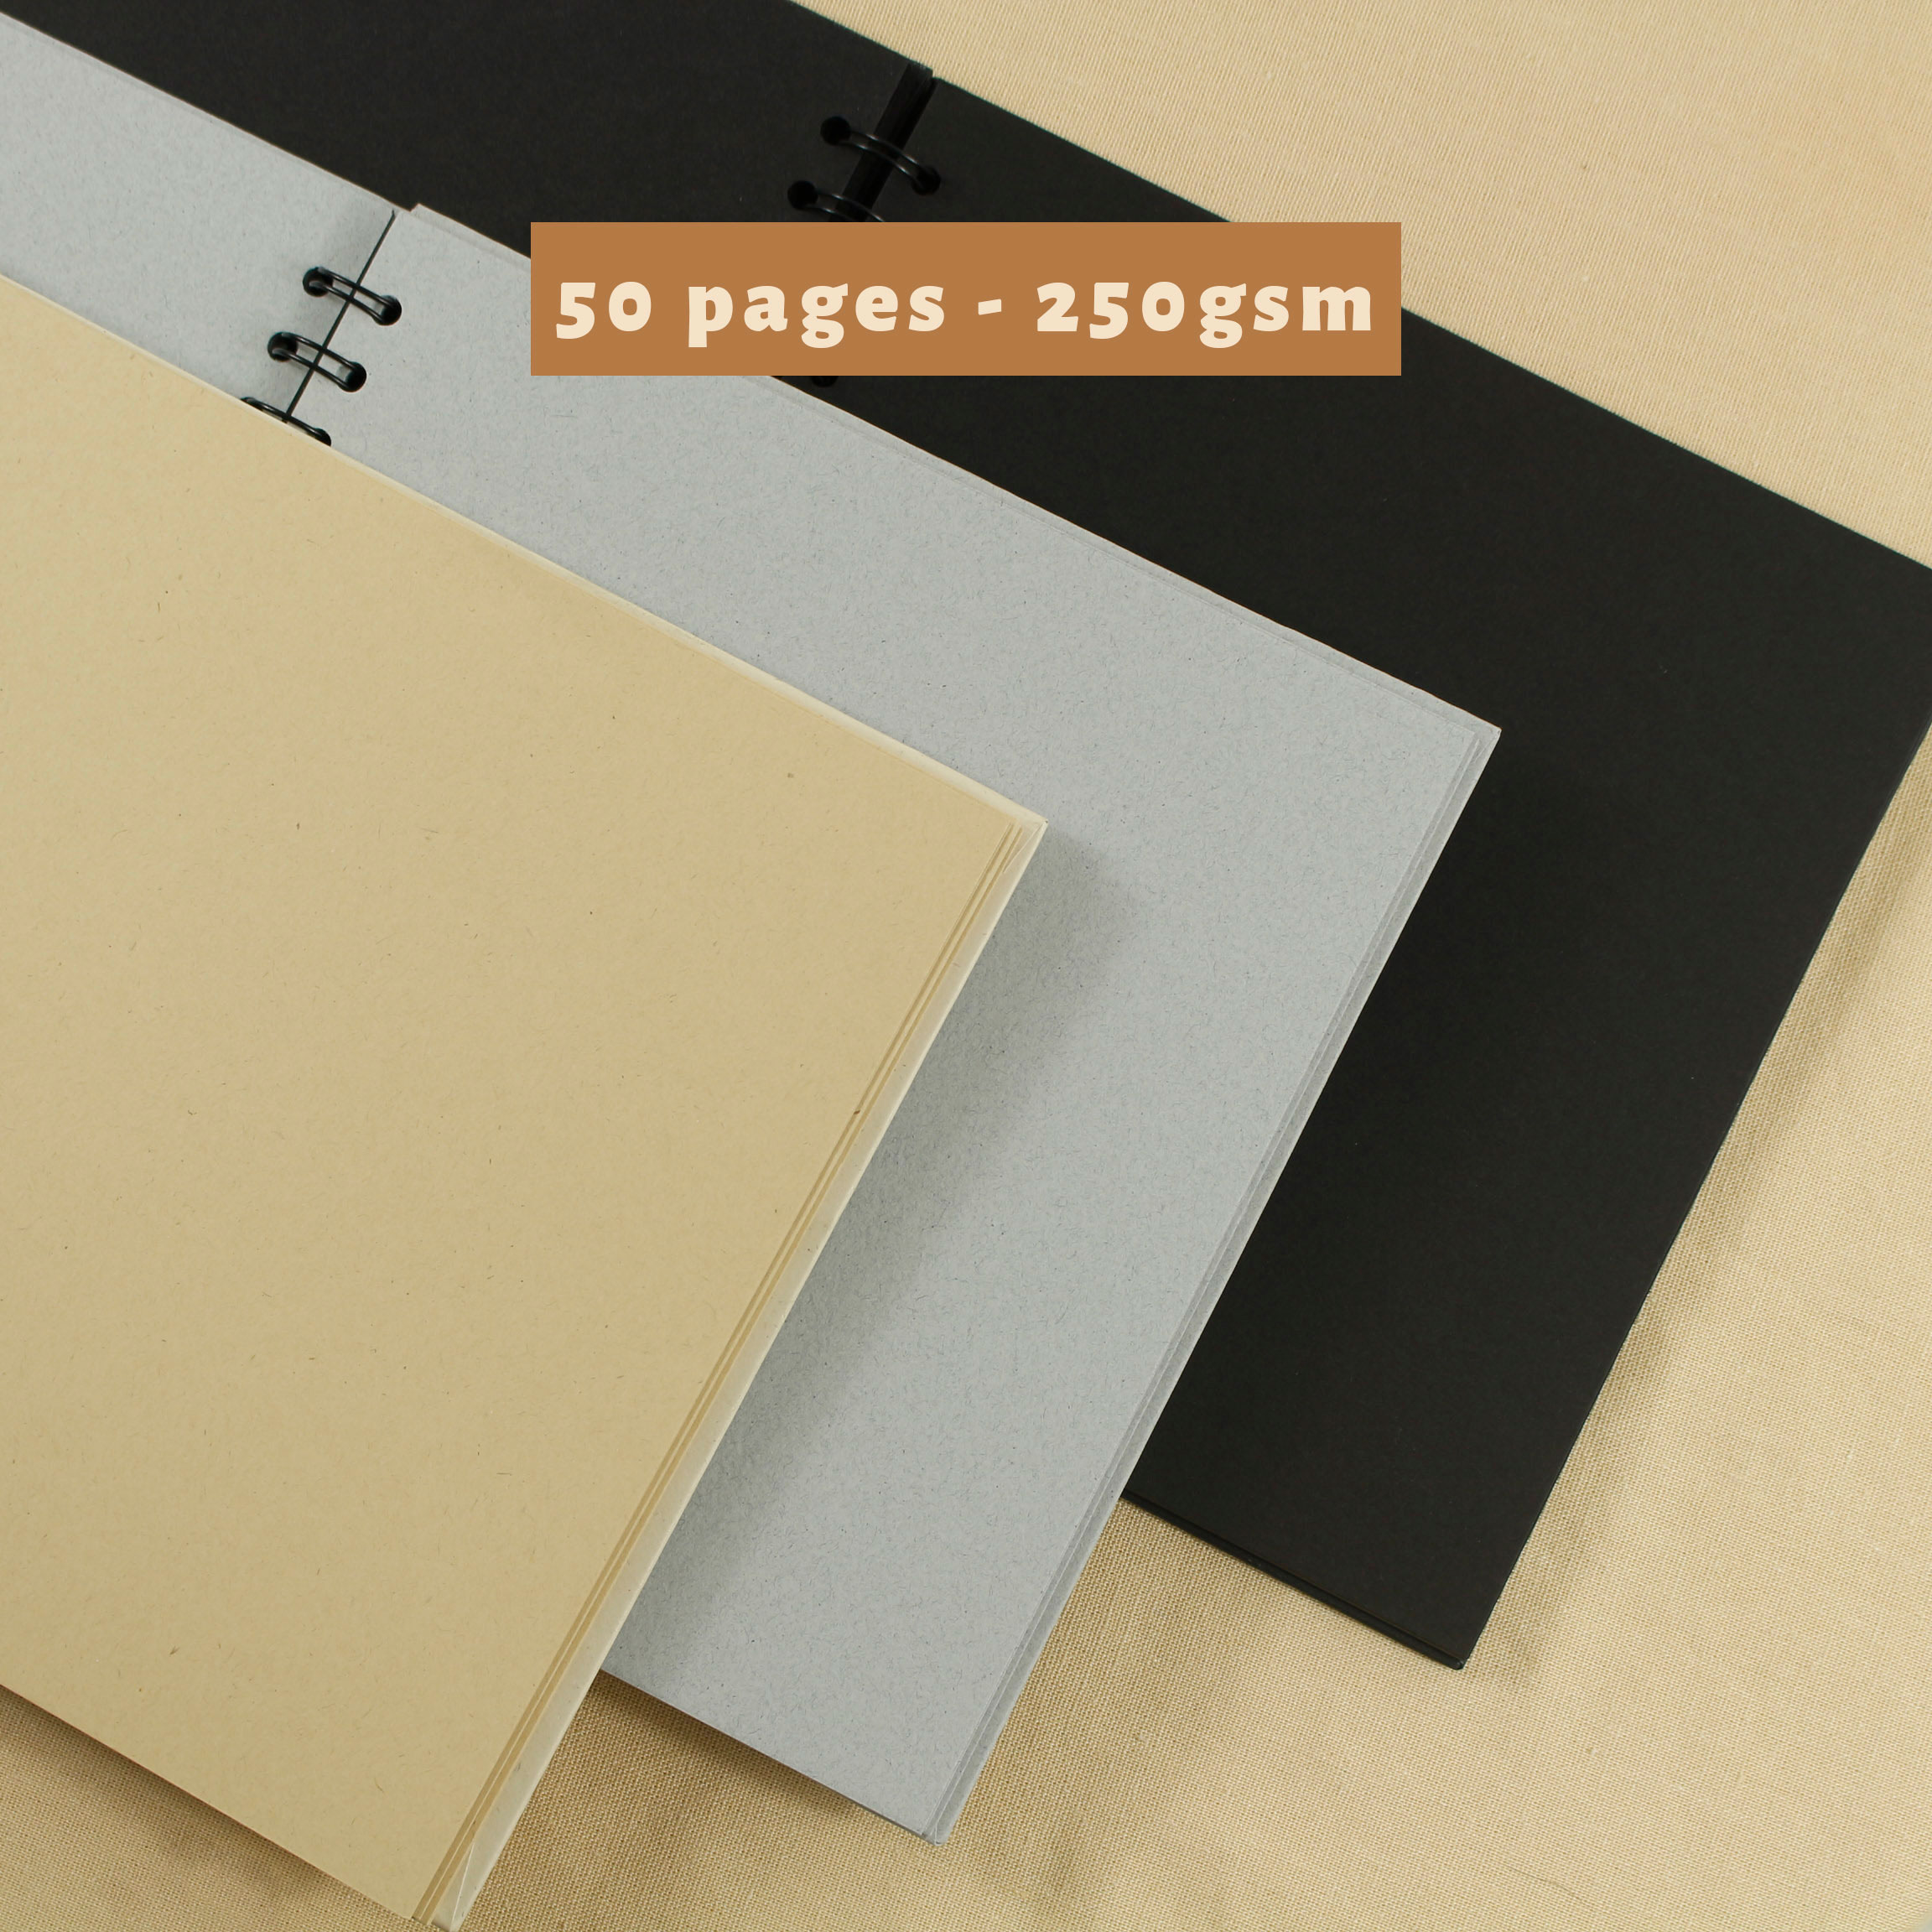 Sổ dán ảnh - Scrapbook 20x20cm 50 trang giấy mỹ thuật cao cấp dày 250gsm - STHM stationery